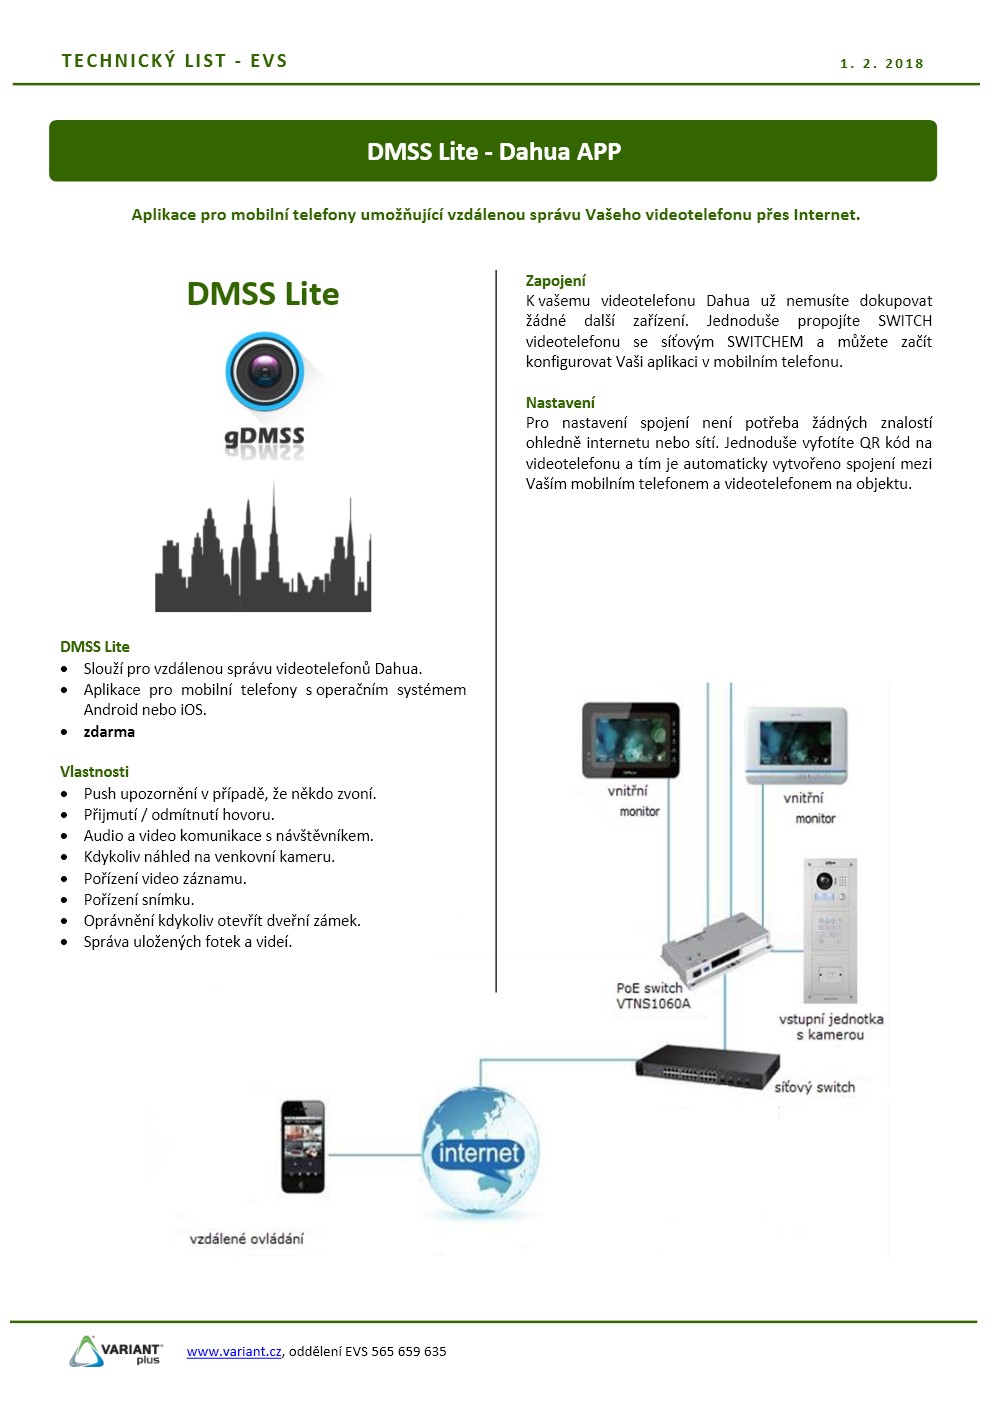 Dahua - mobilní aplikace DMSS